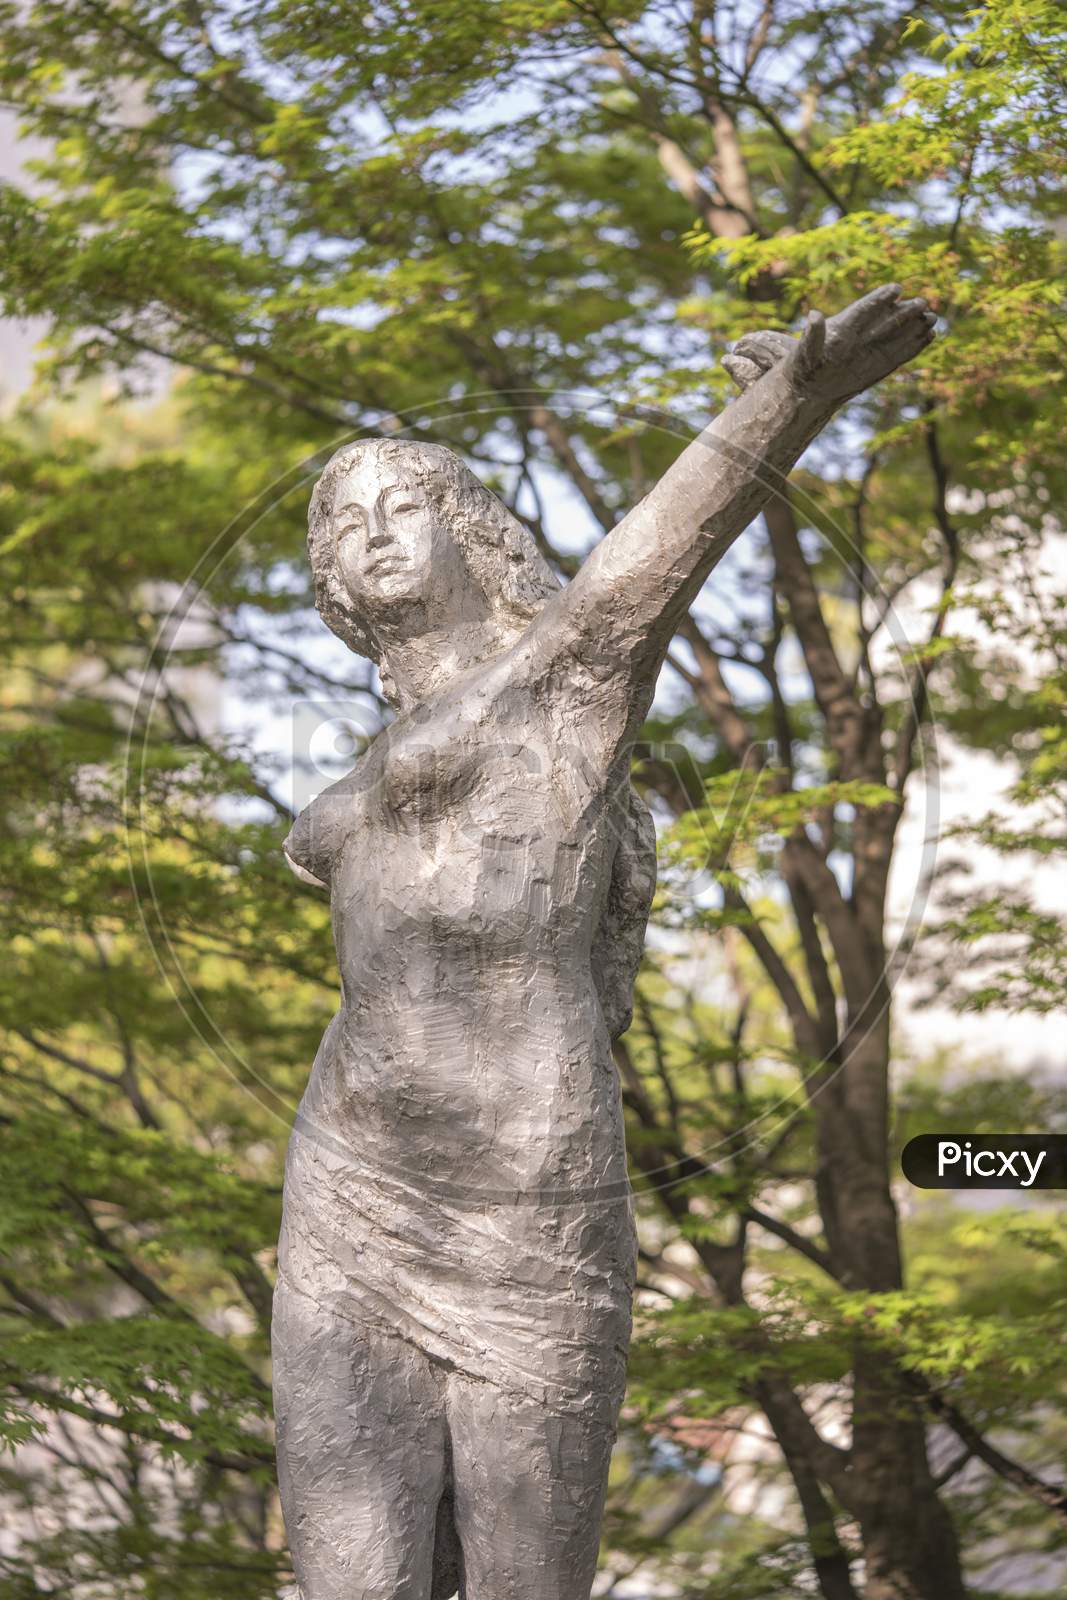 Beautiful Girl Sculpture In Asukayama Park In The Kita District Of Tokyo, Japan.